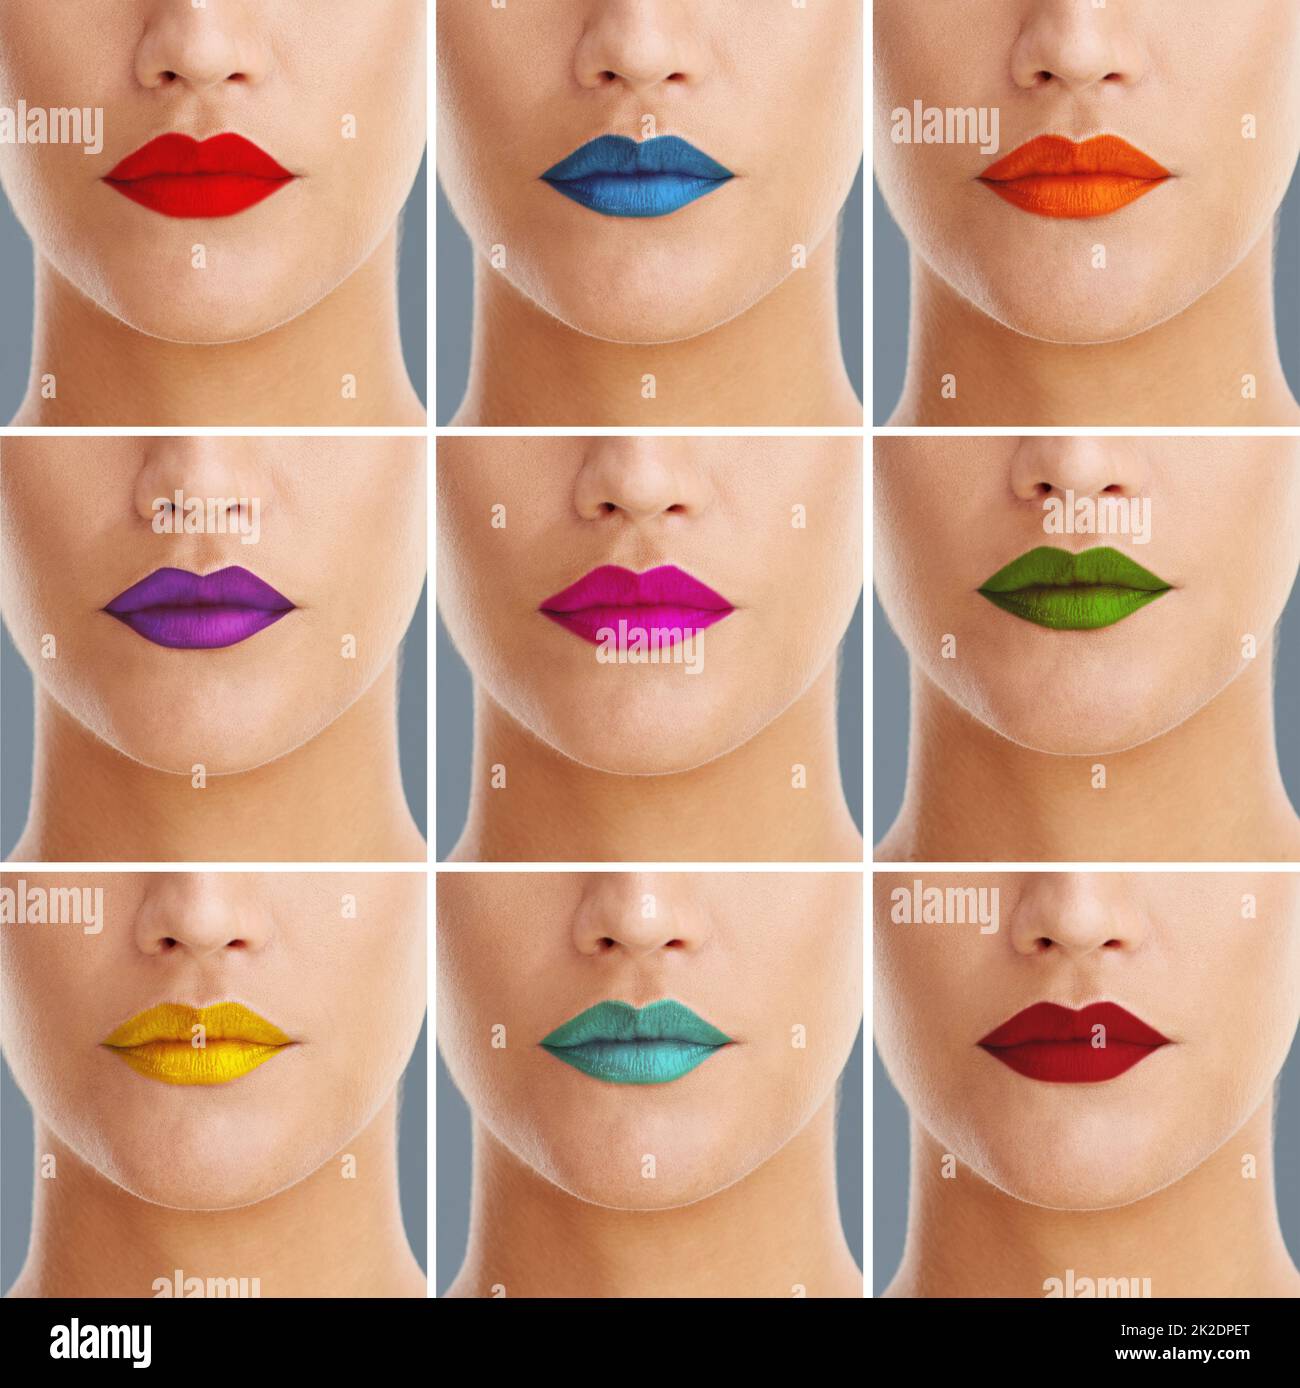 Malen Sie mir jede Farbe. Zusammengesetzte Aufnahme einer Frau, die eine Vielzahl von bunten Lippenstiften trägt. Stockfoto